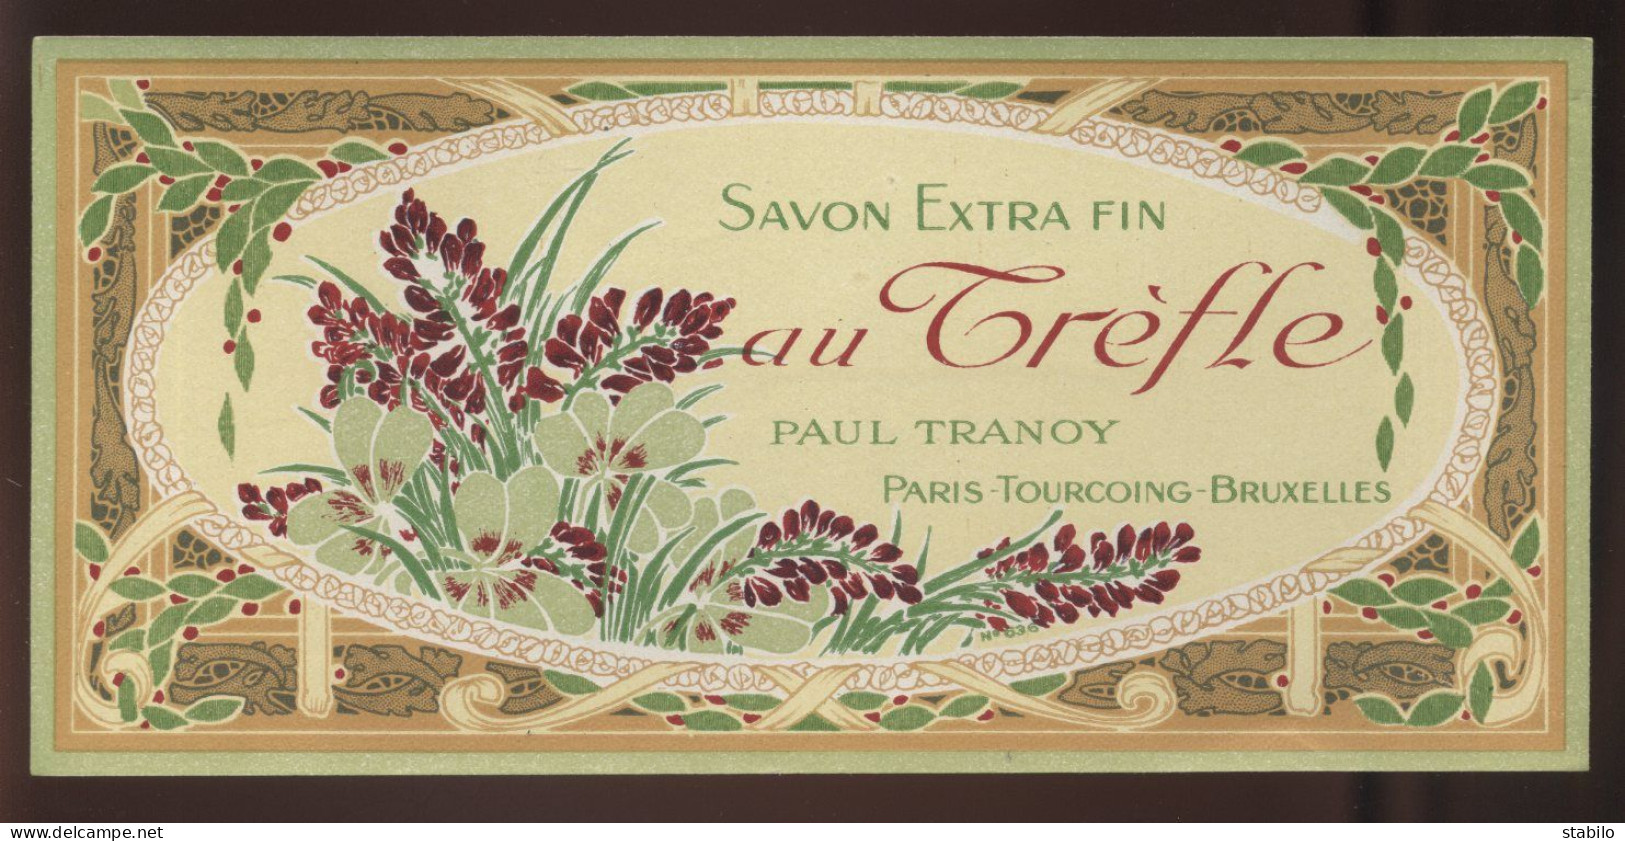 PARFUMS-BEAUTE - ETIQUETTE - SAVON EXTRA FIN AU TREFLE - MAISON PAUL TRANOY, PARIS-TOURCOING-BRUXELLES - Etiquetas